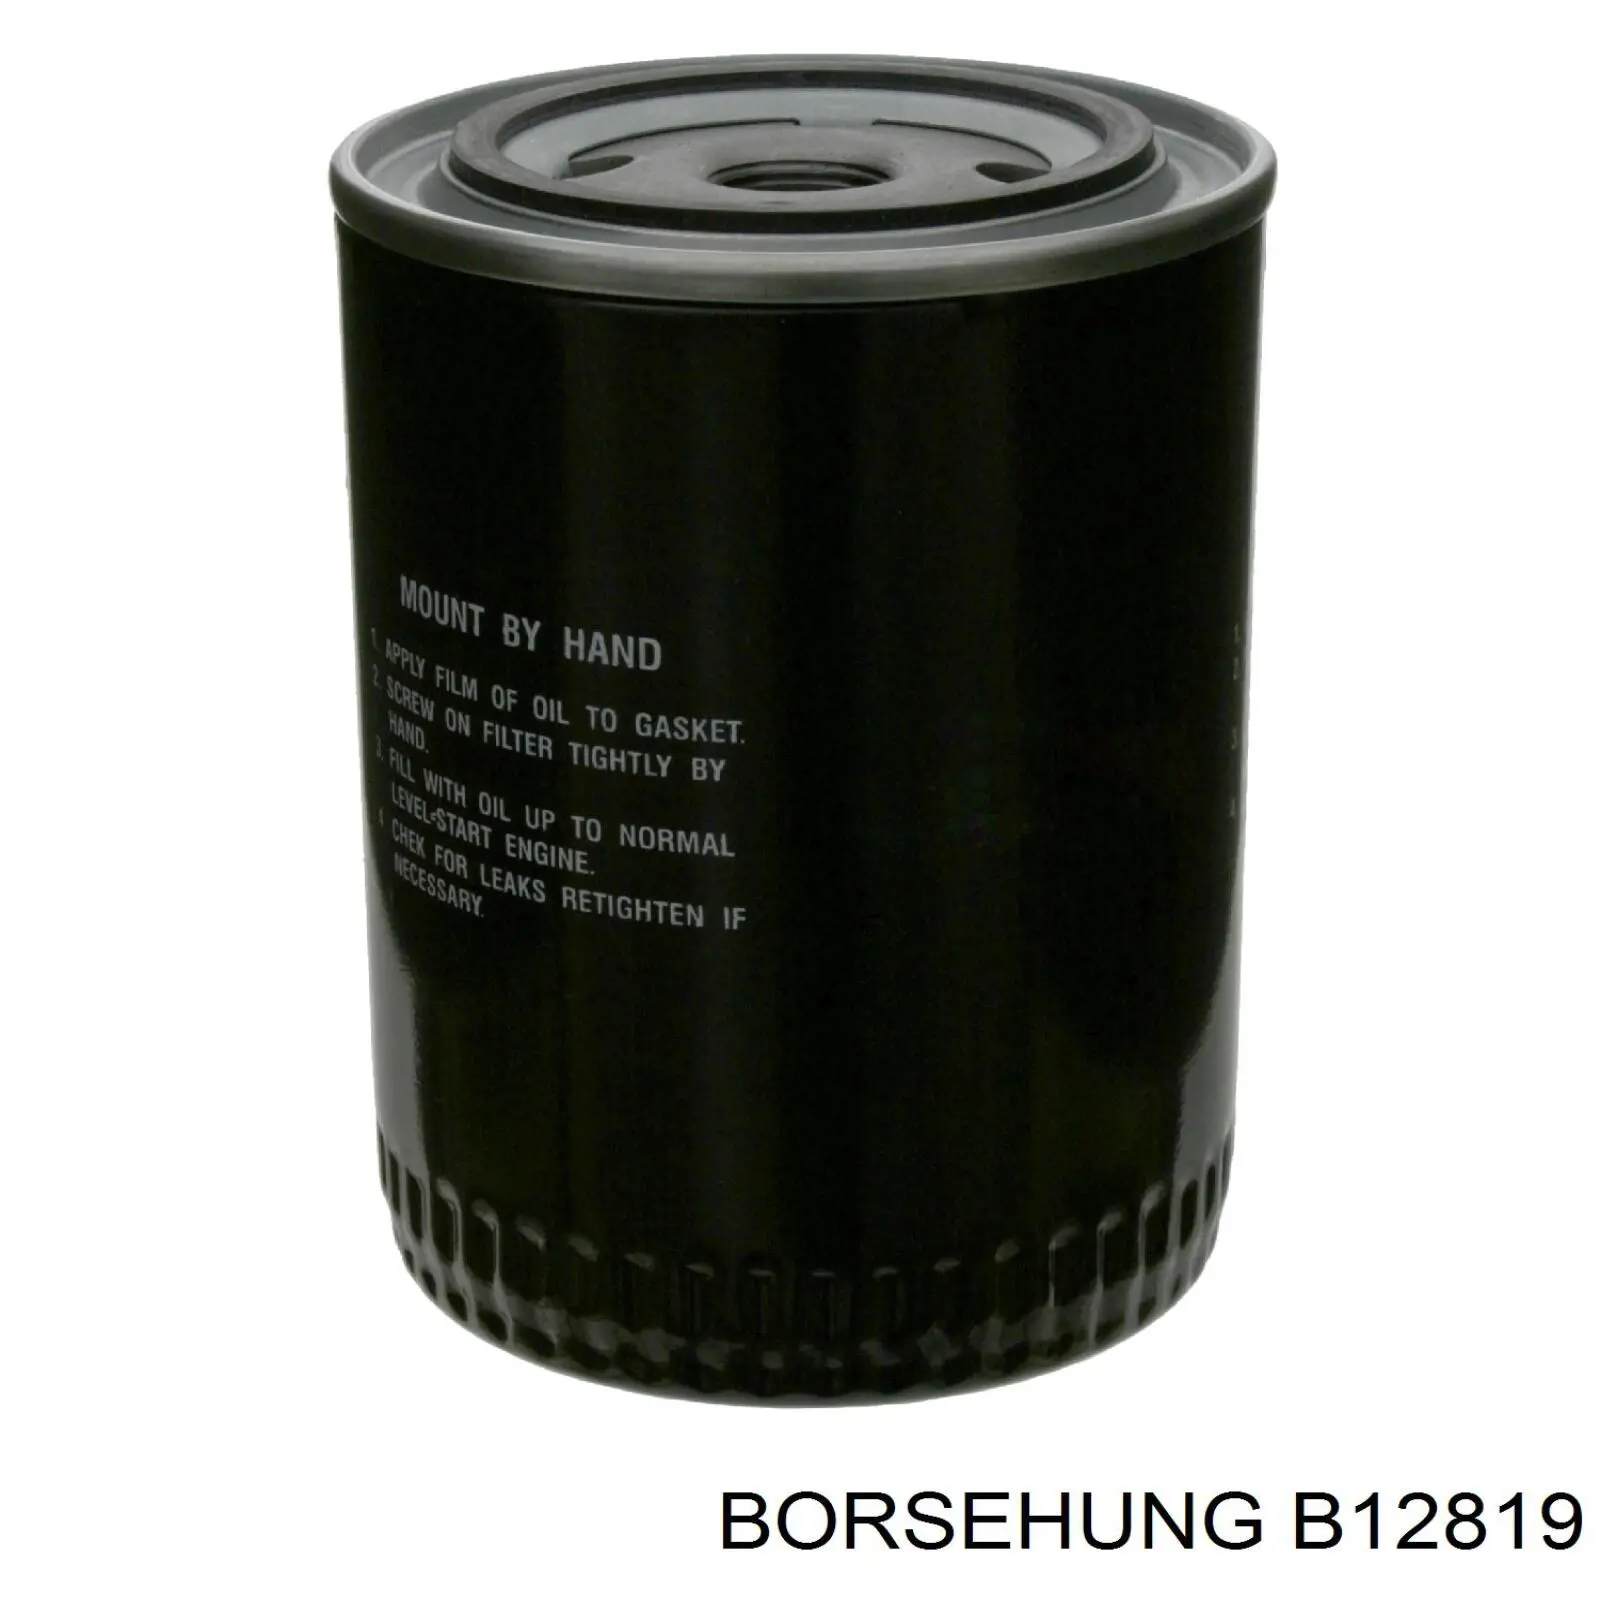 B12819 Borsehung filtro de aceite